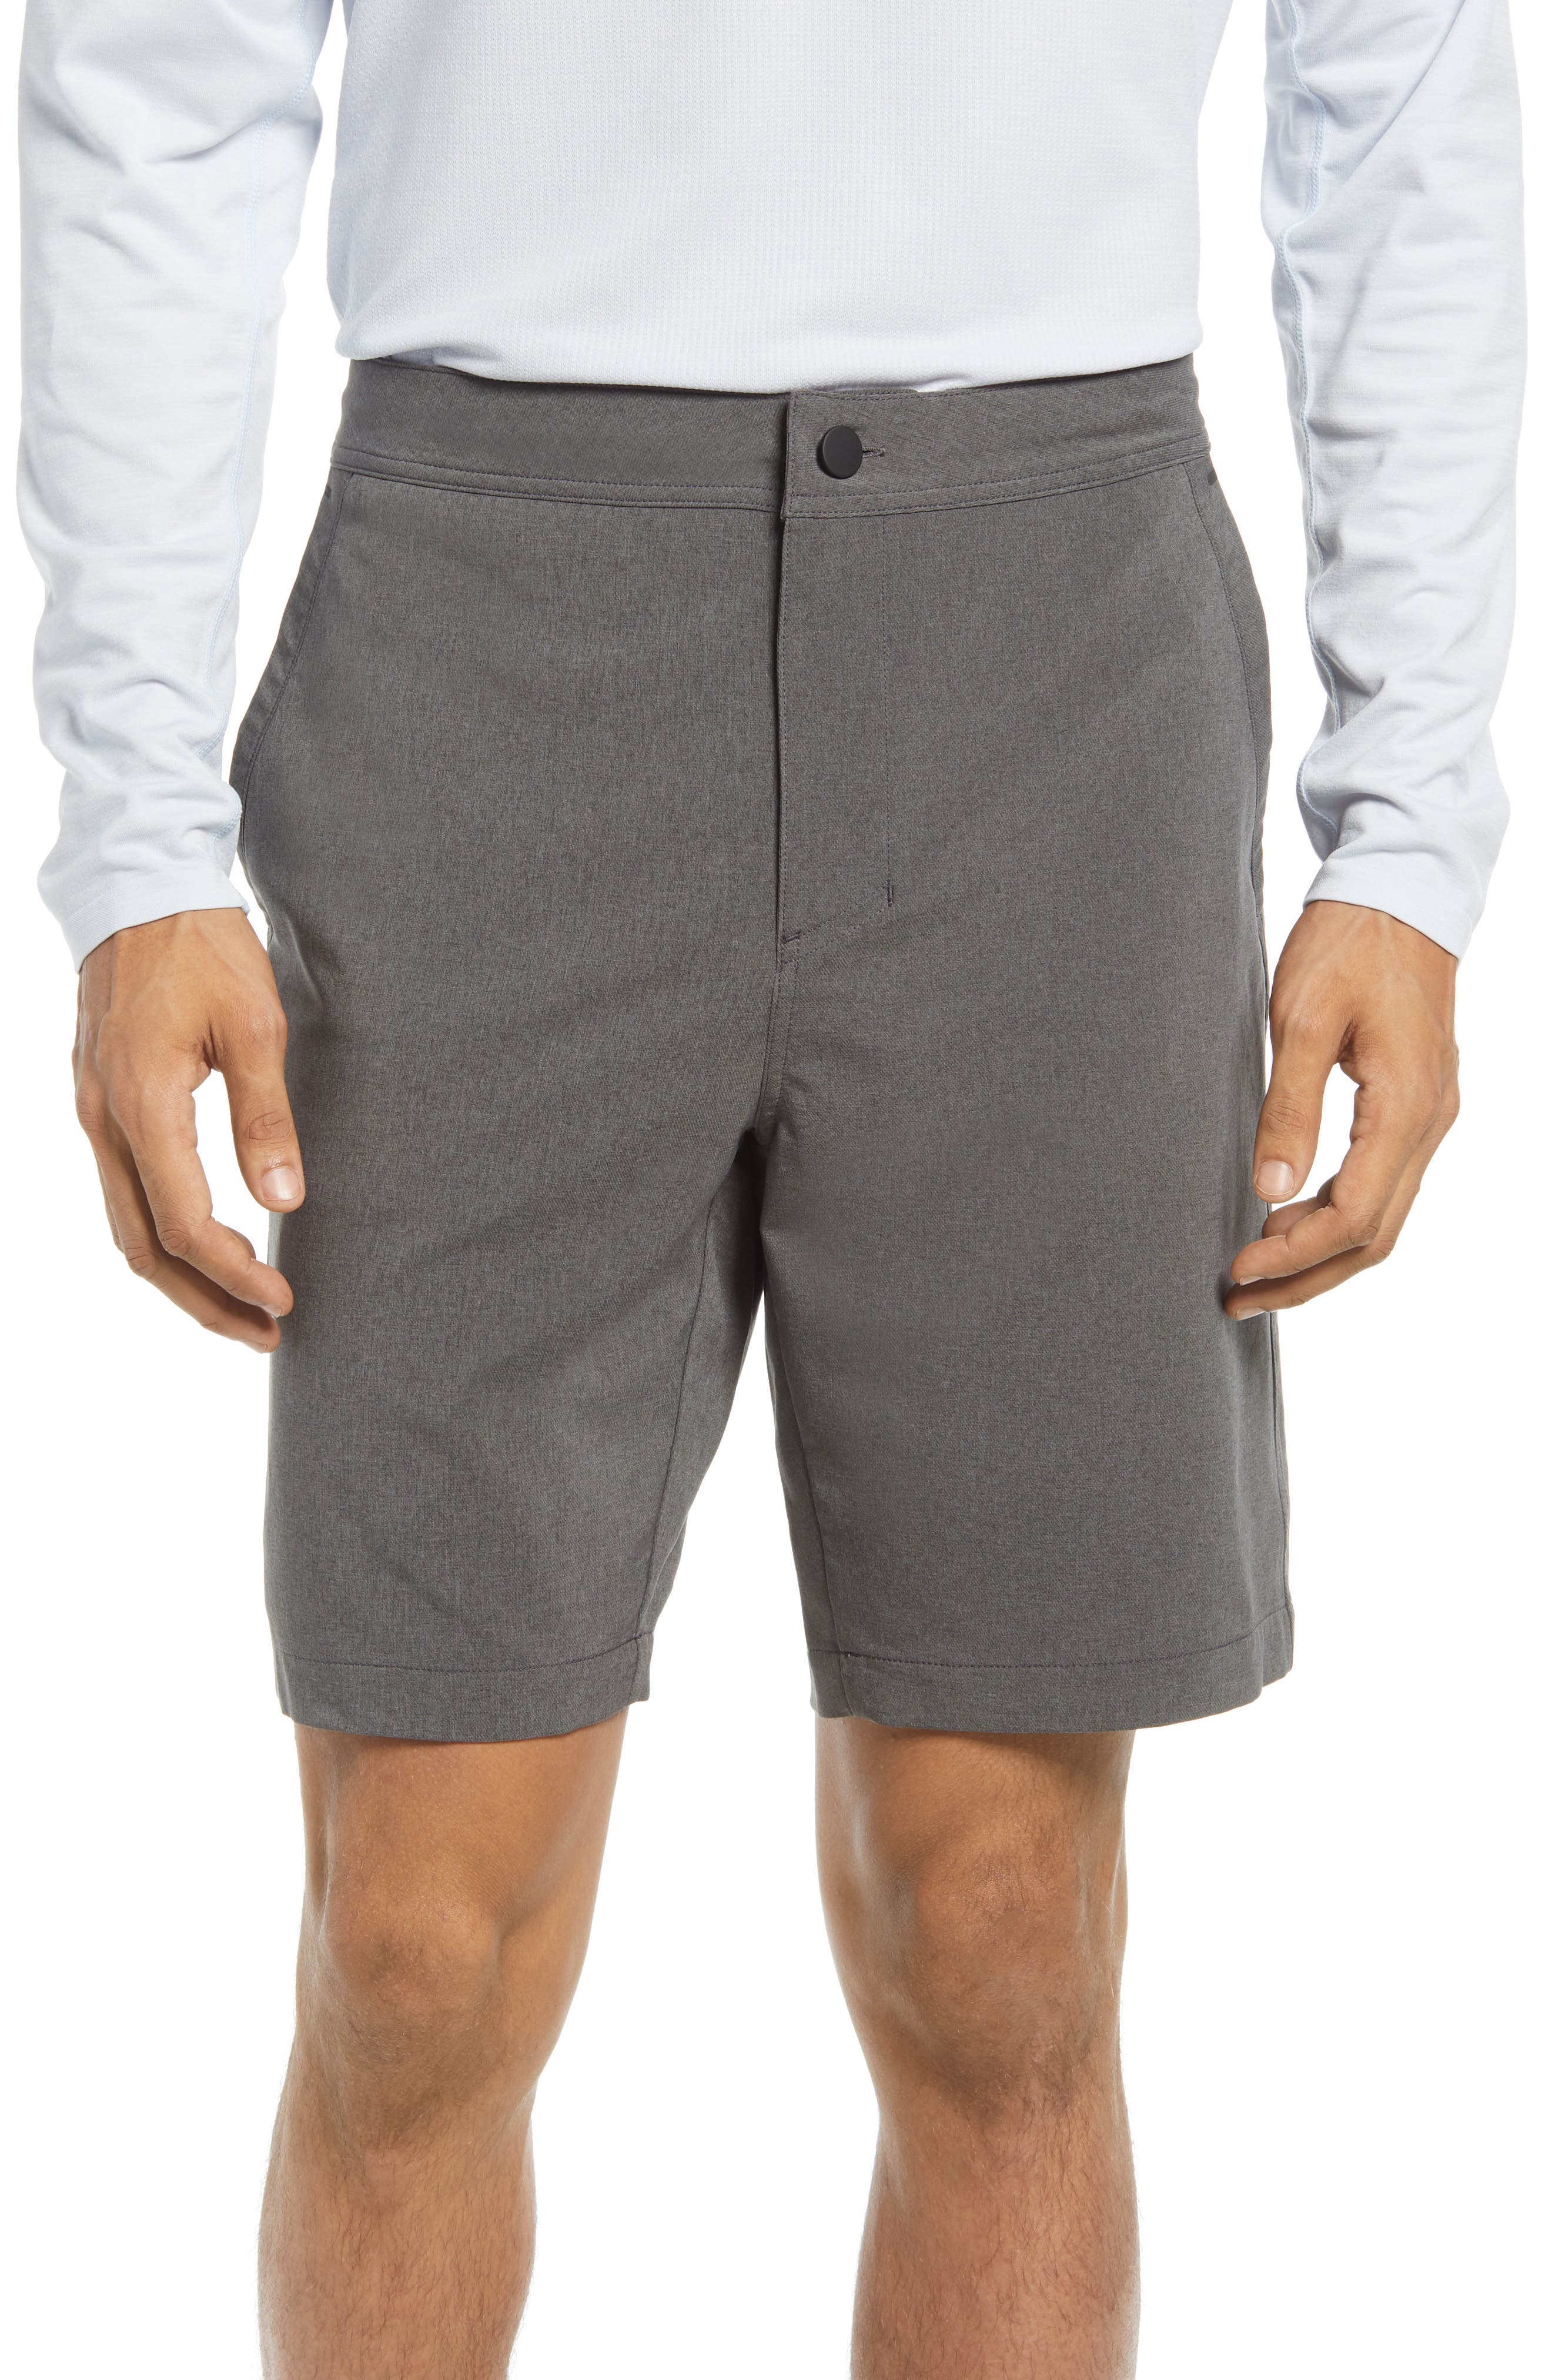 mens shorts sale online